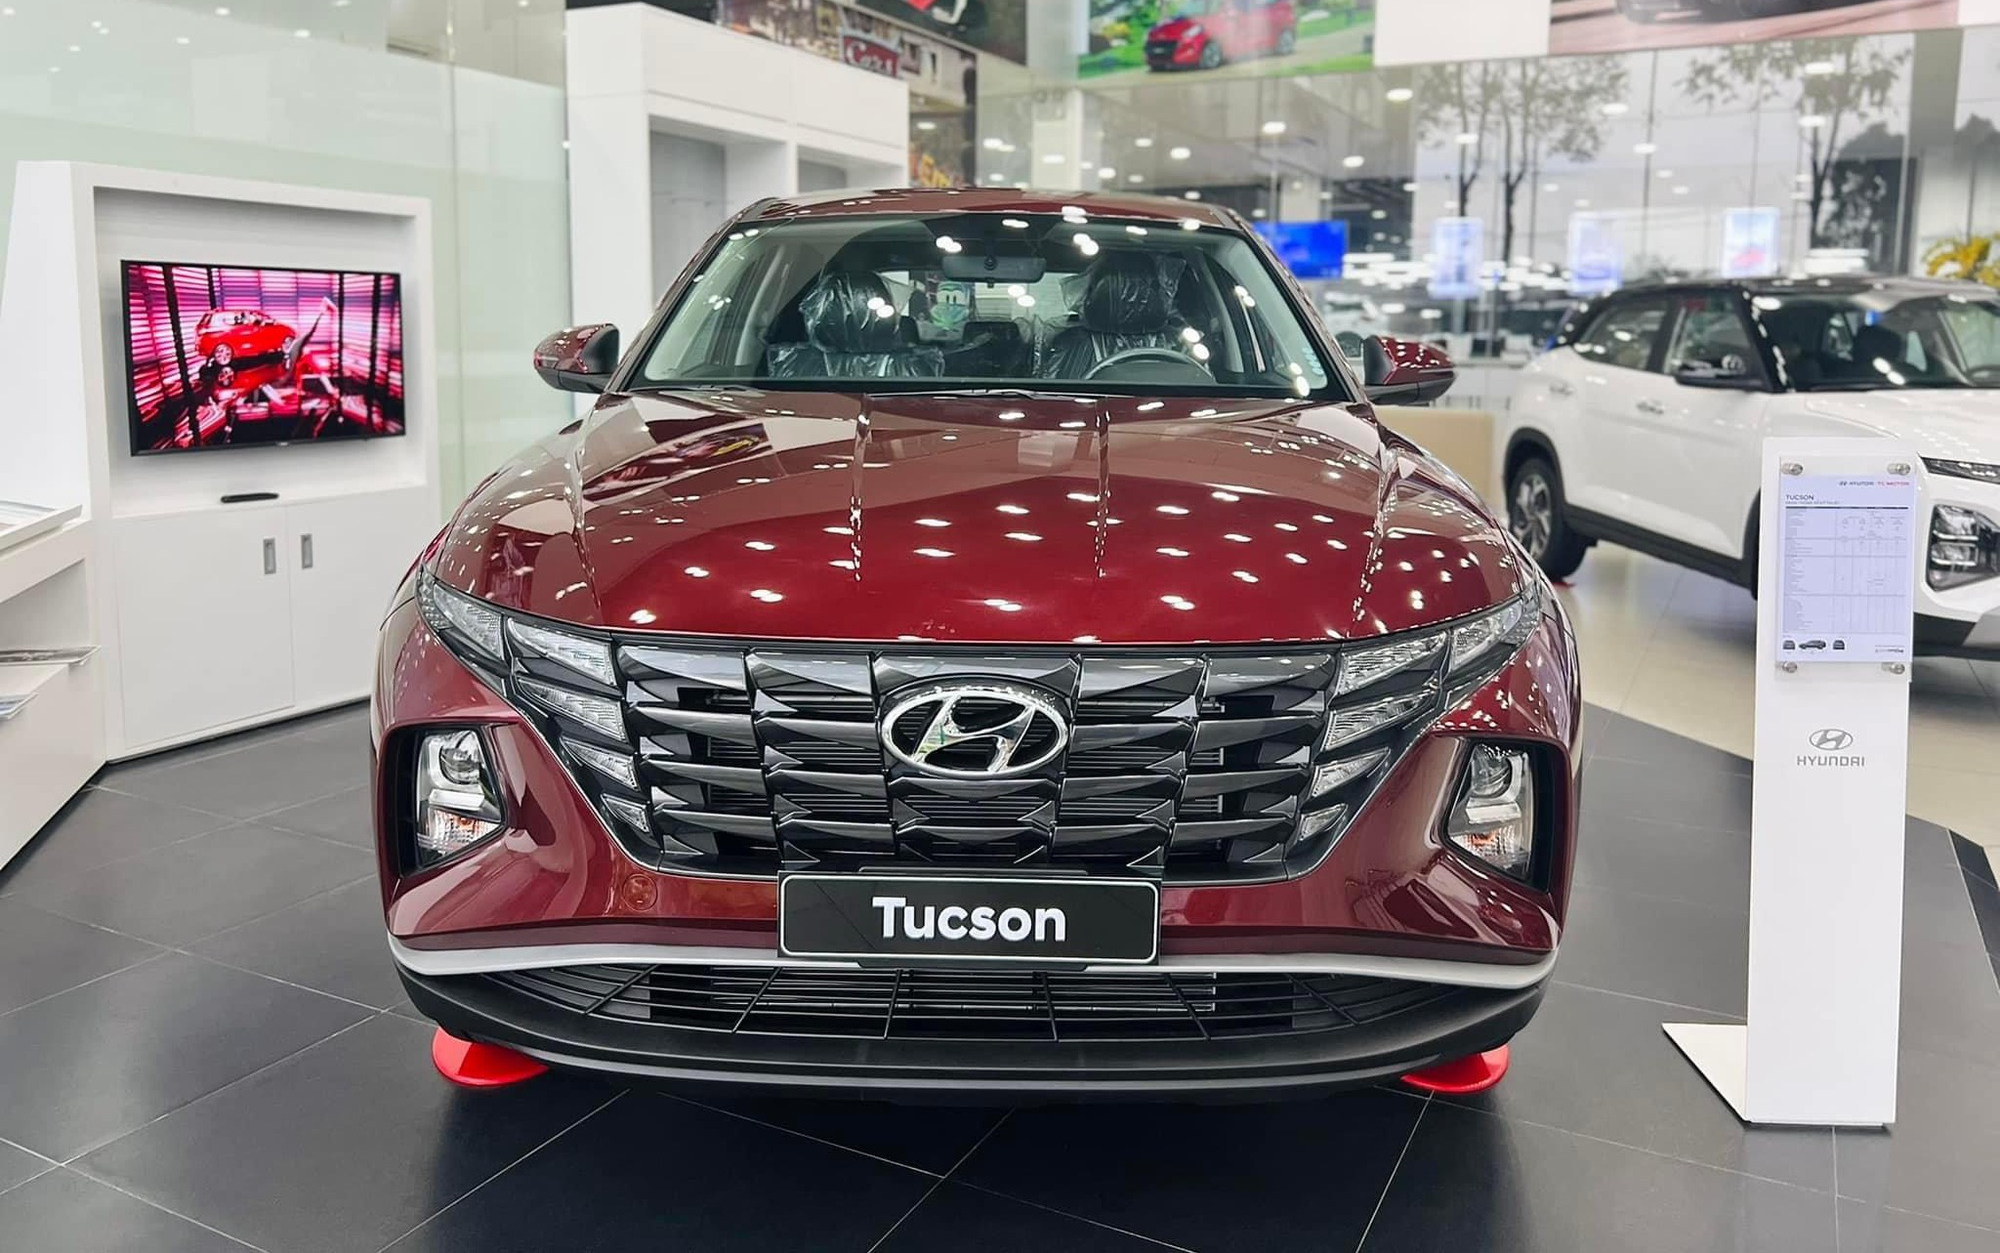 Giảm giá gần 200 triệu đồng, bộ đôi Hyundai Tucson, Santa Fe hút khách Việt - Ảnh 1.